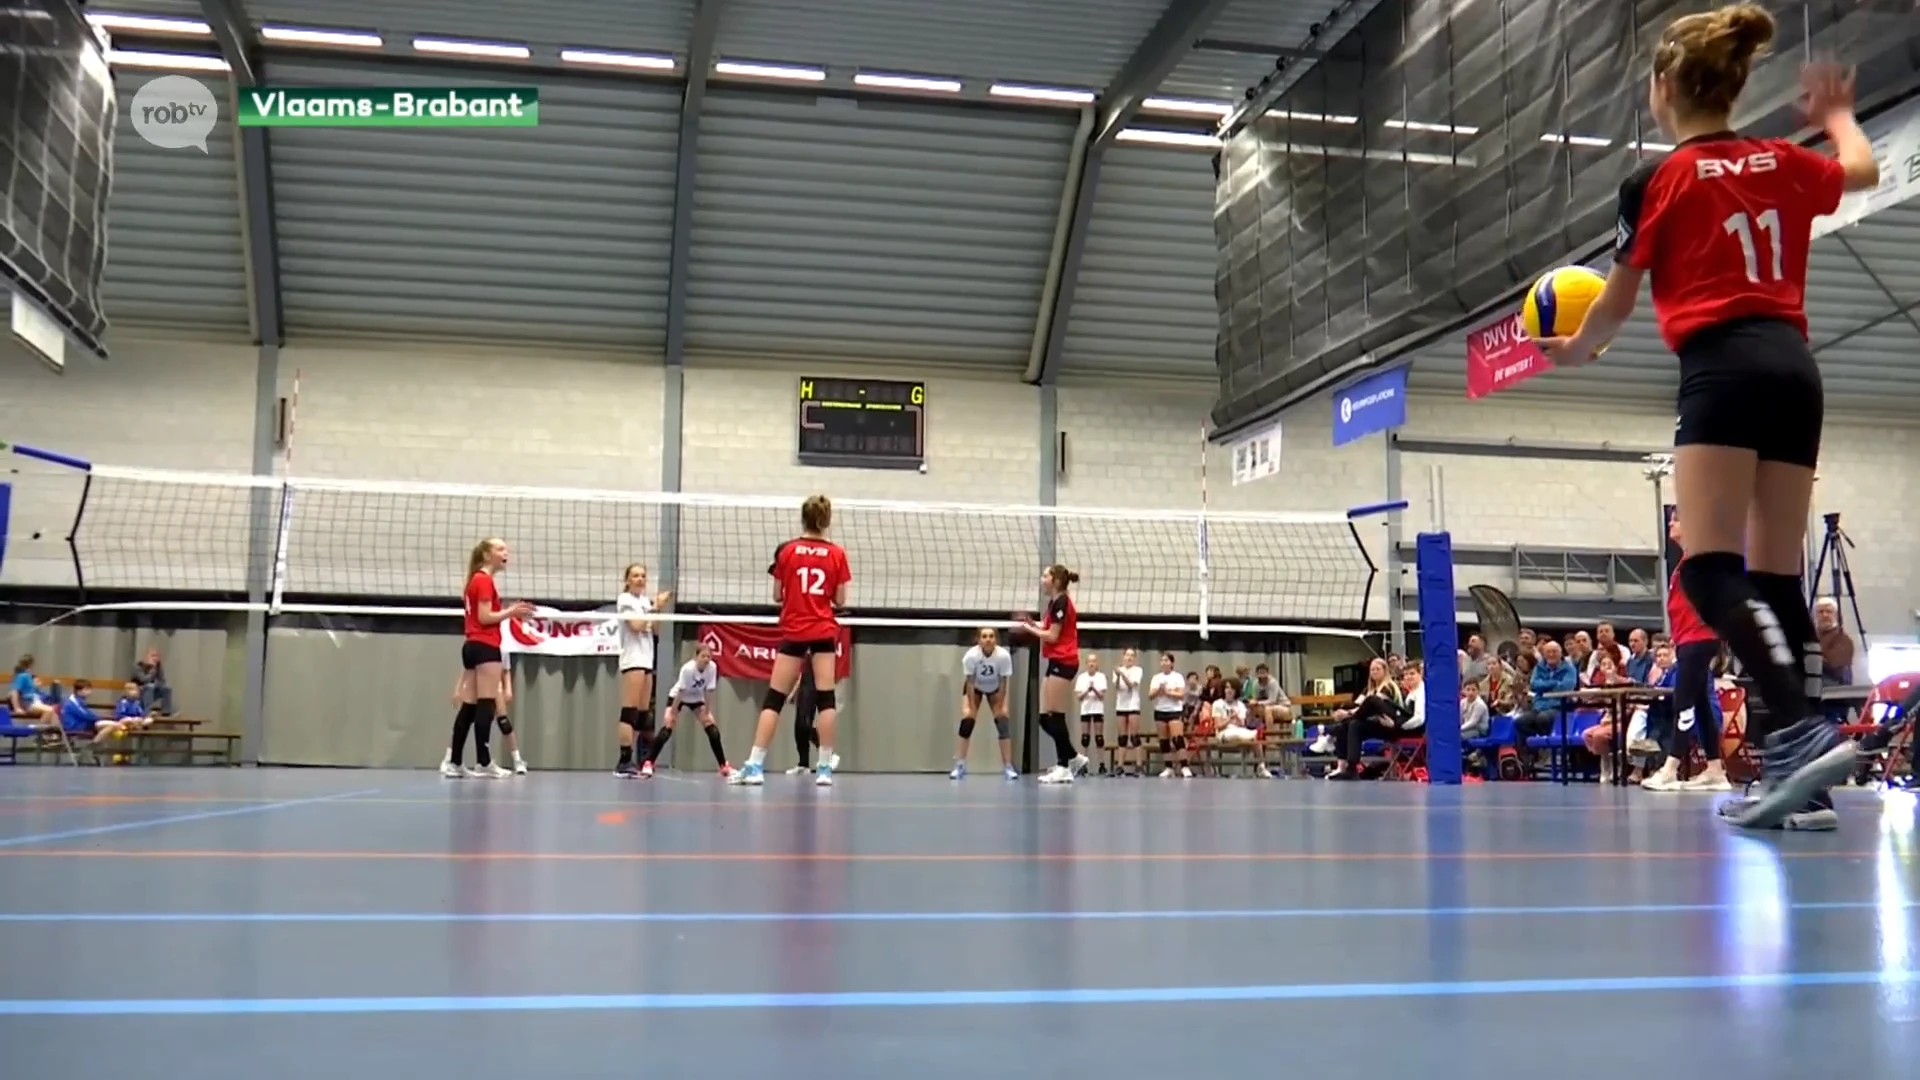 Heel wat regioploegen present op bekerfinales Vlaams-Brabant volleybal: "Ideaal voor jongeren die carrière ambiëren"